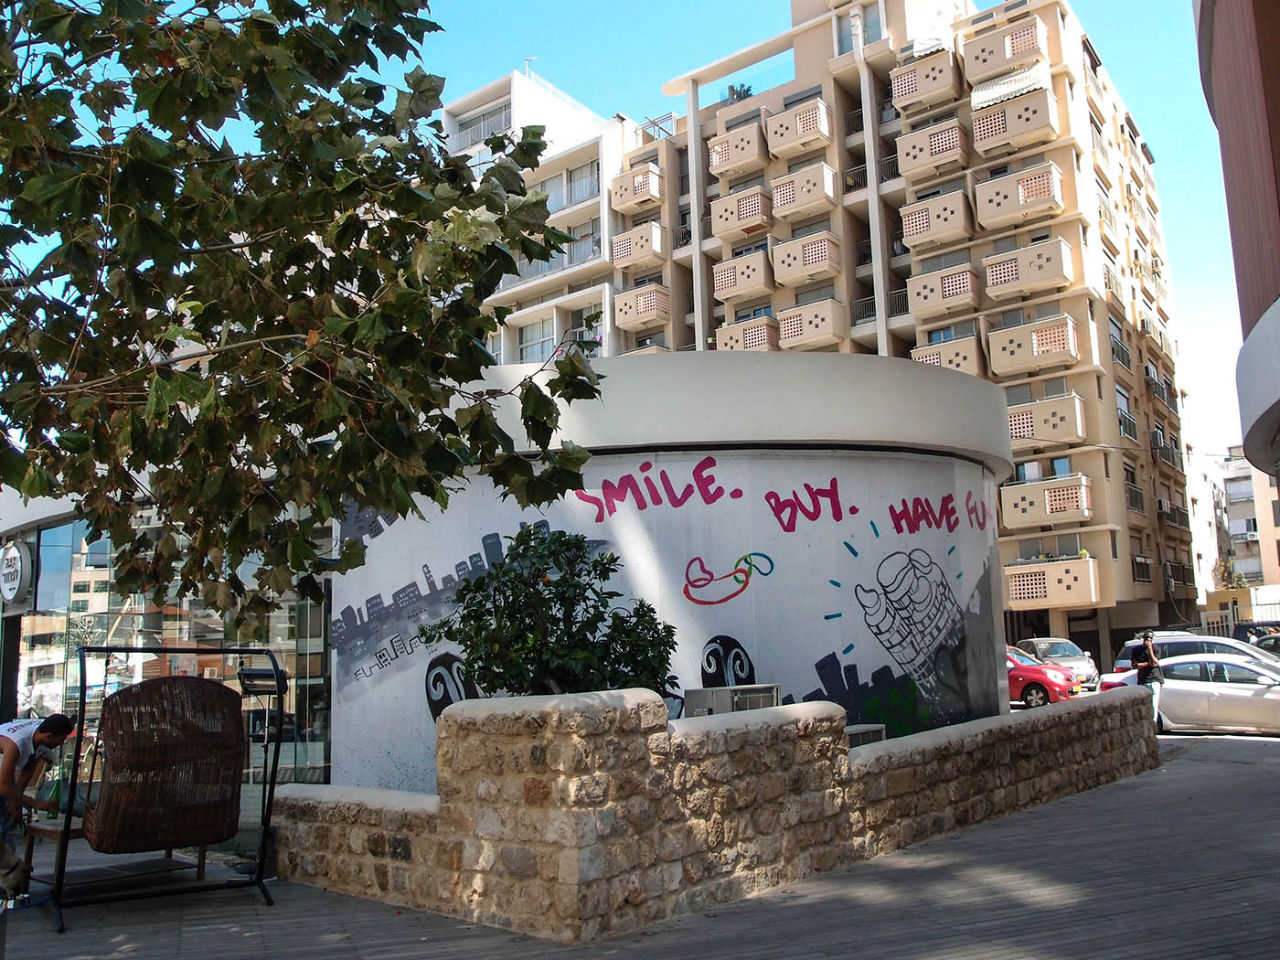 Шук Левински в квартале Флорентин Тель-Авив, Израиль